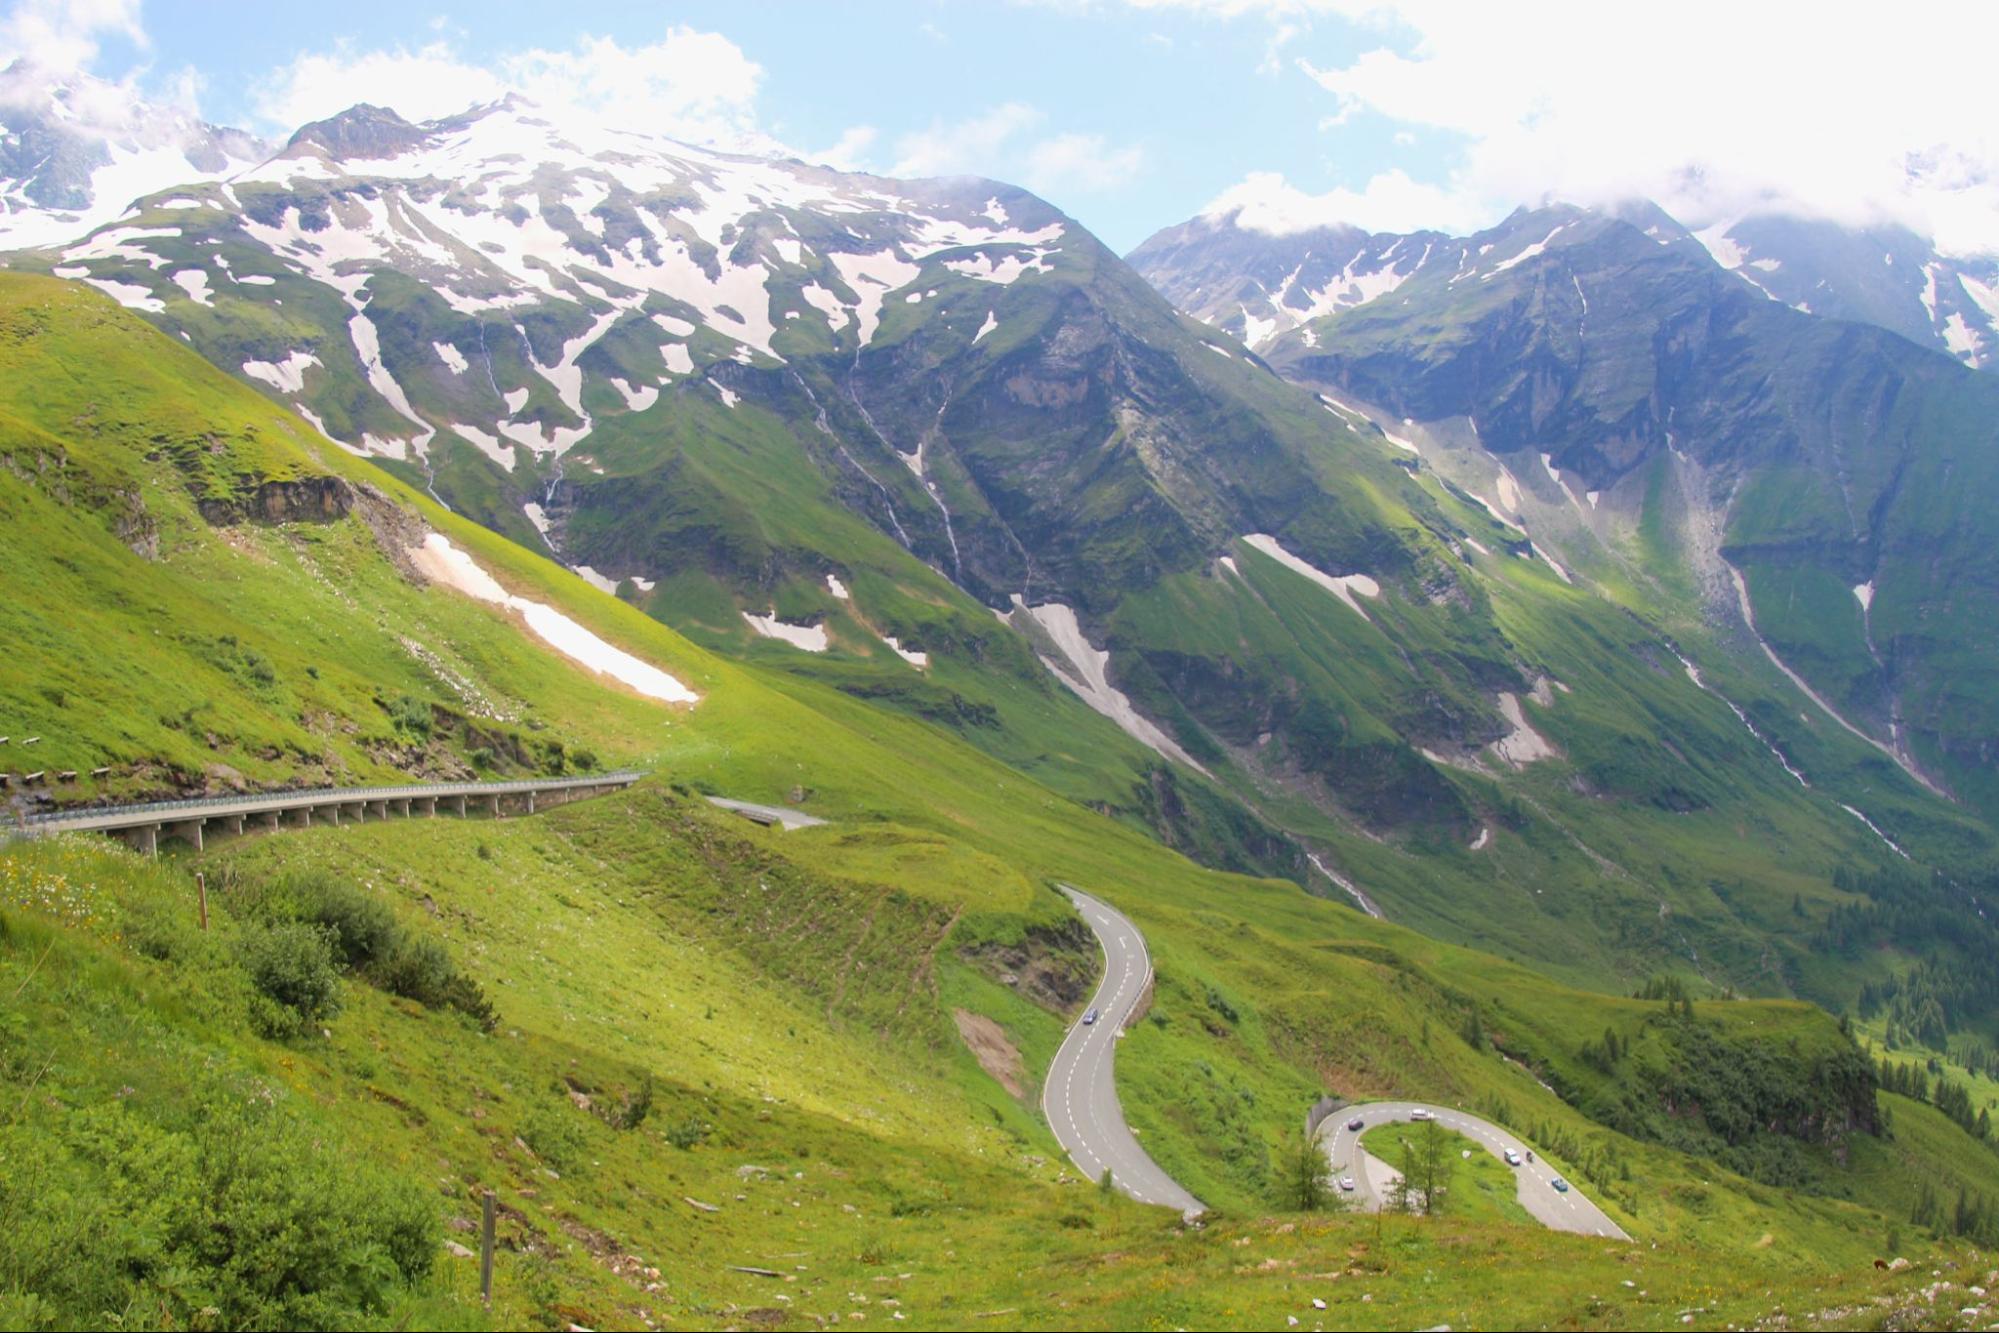 9. ถนน Grossglockner High Alpine Road หนึ่งในถนนที่สวยที่สุดในโลก